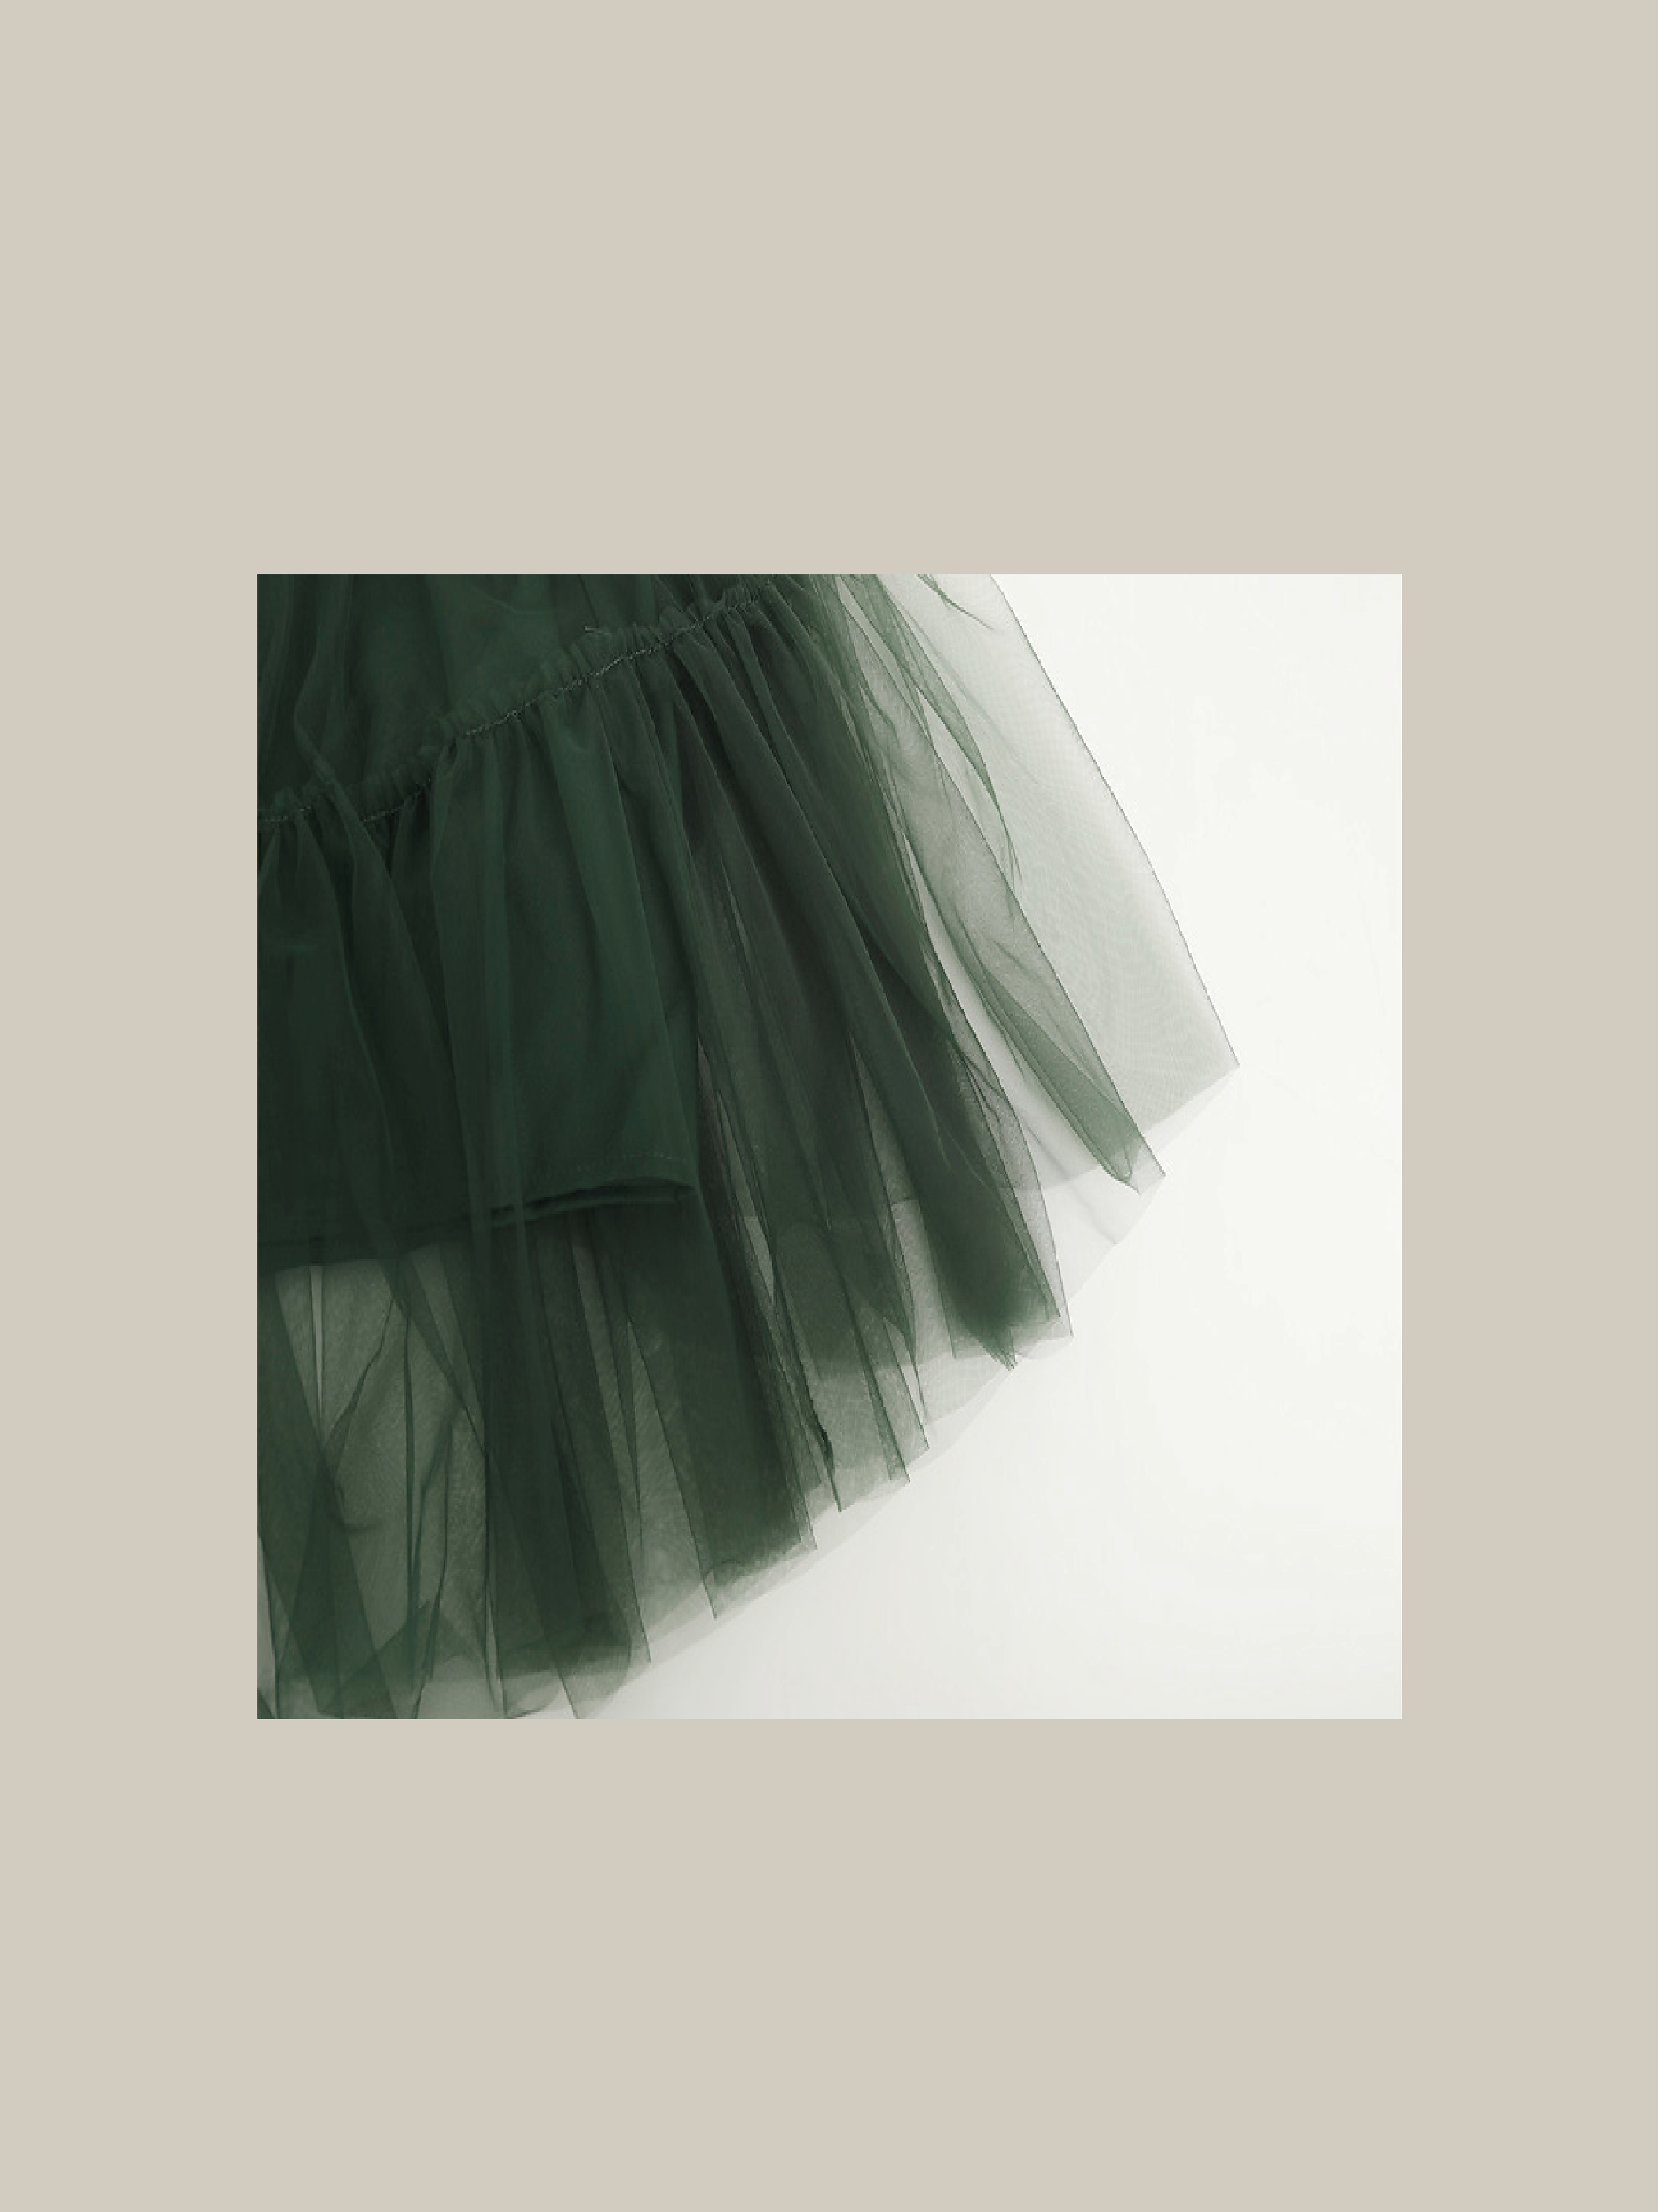 Viridian Green Mesh Skirt